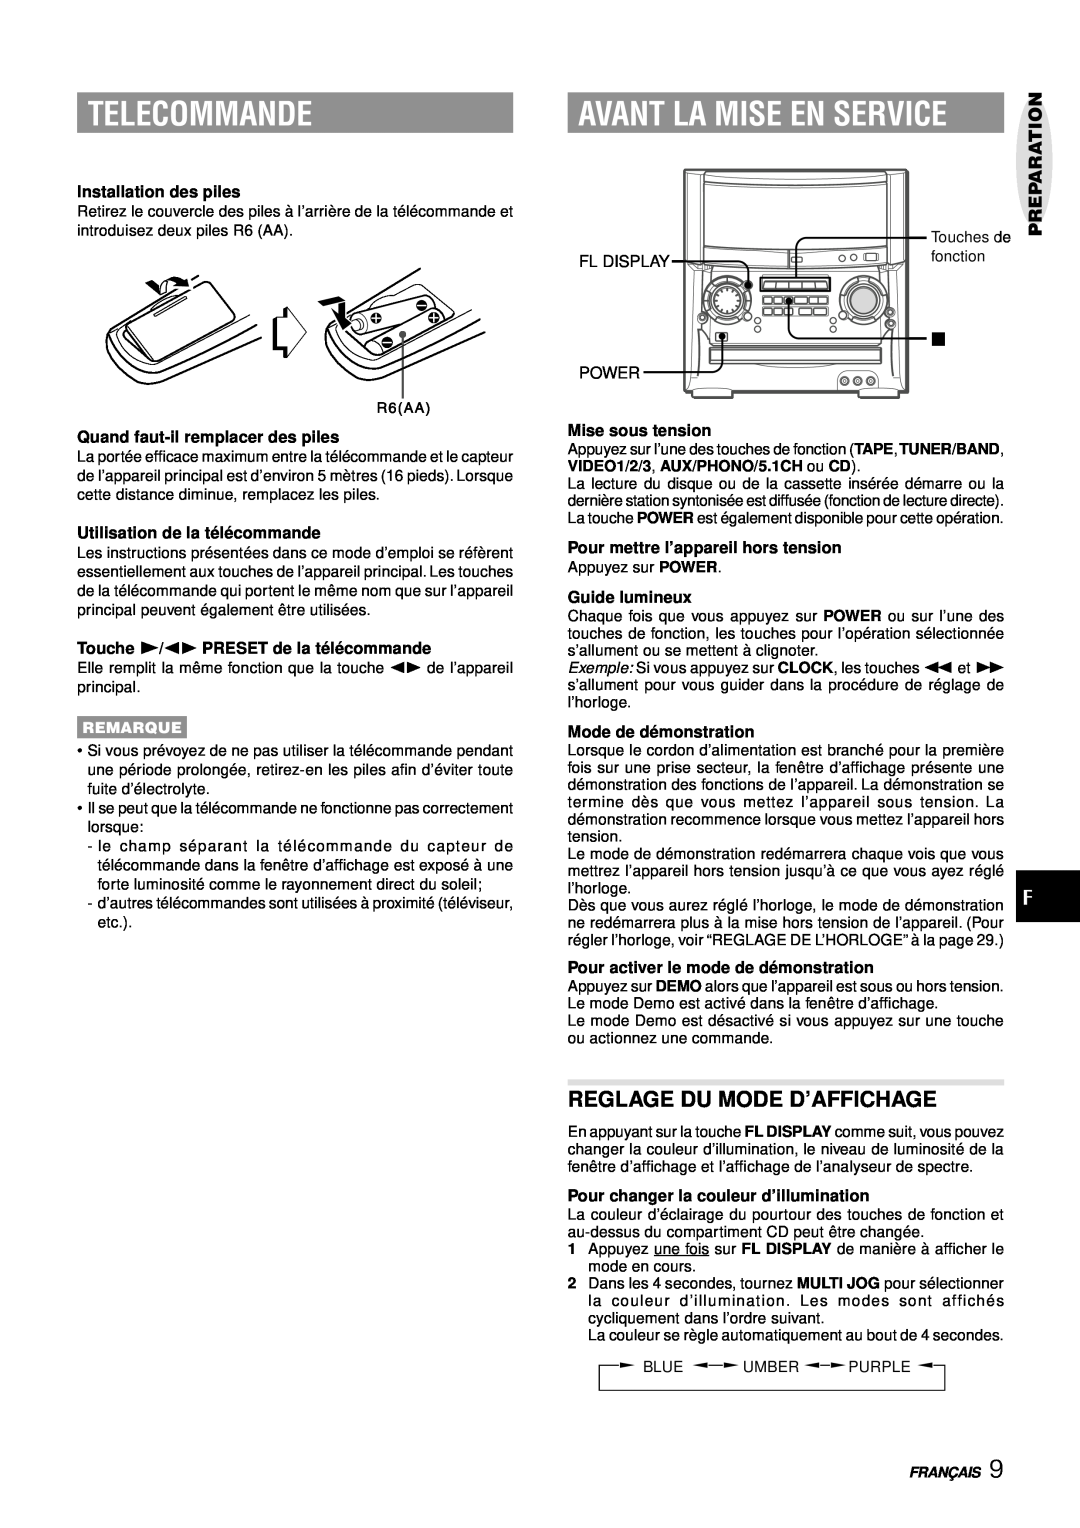 Aiwa XH-A1000 Telecommande, Avant La Mise En Service, Reglage Du Mode D’Affichage, Installation des piles, Guide lumineux 